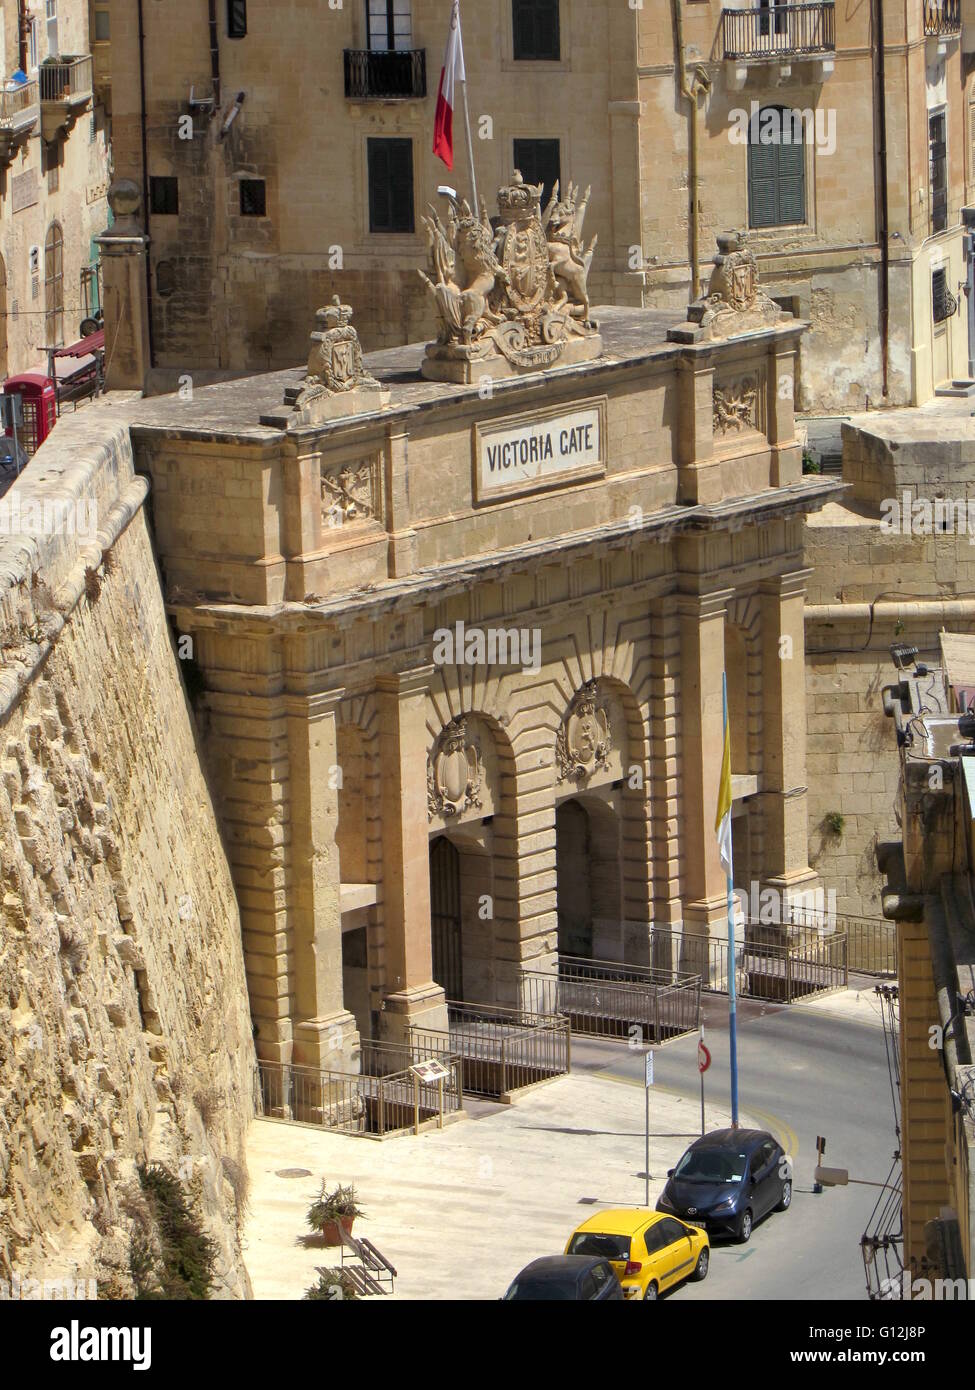 Victoria Gate, Valletta, Malta Stock Photo